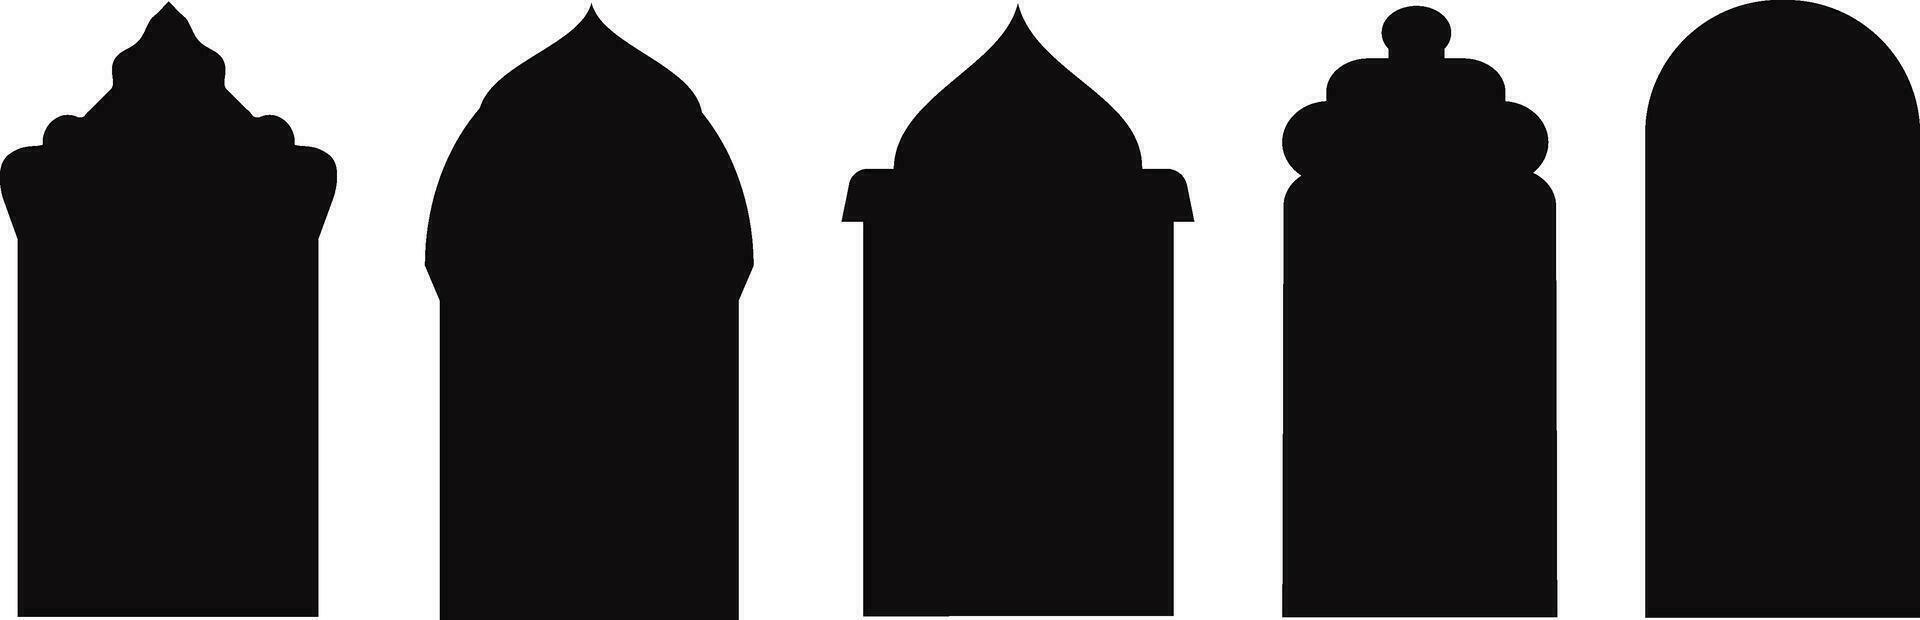 ensemble de noir et blanc silhouettes de islamique windows.arab Cadre set.ramadan kareem simbol icône. vecteur